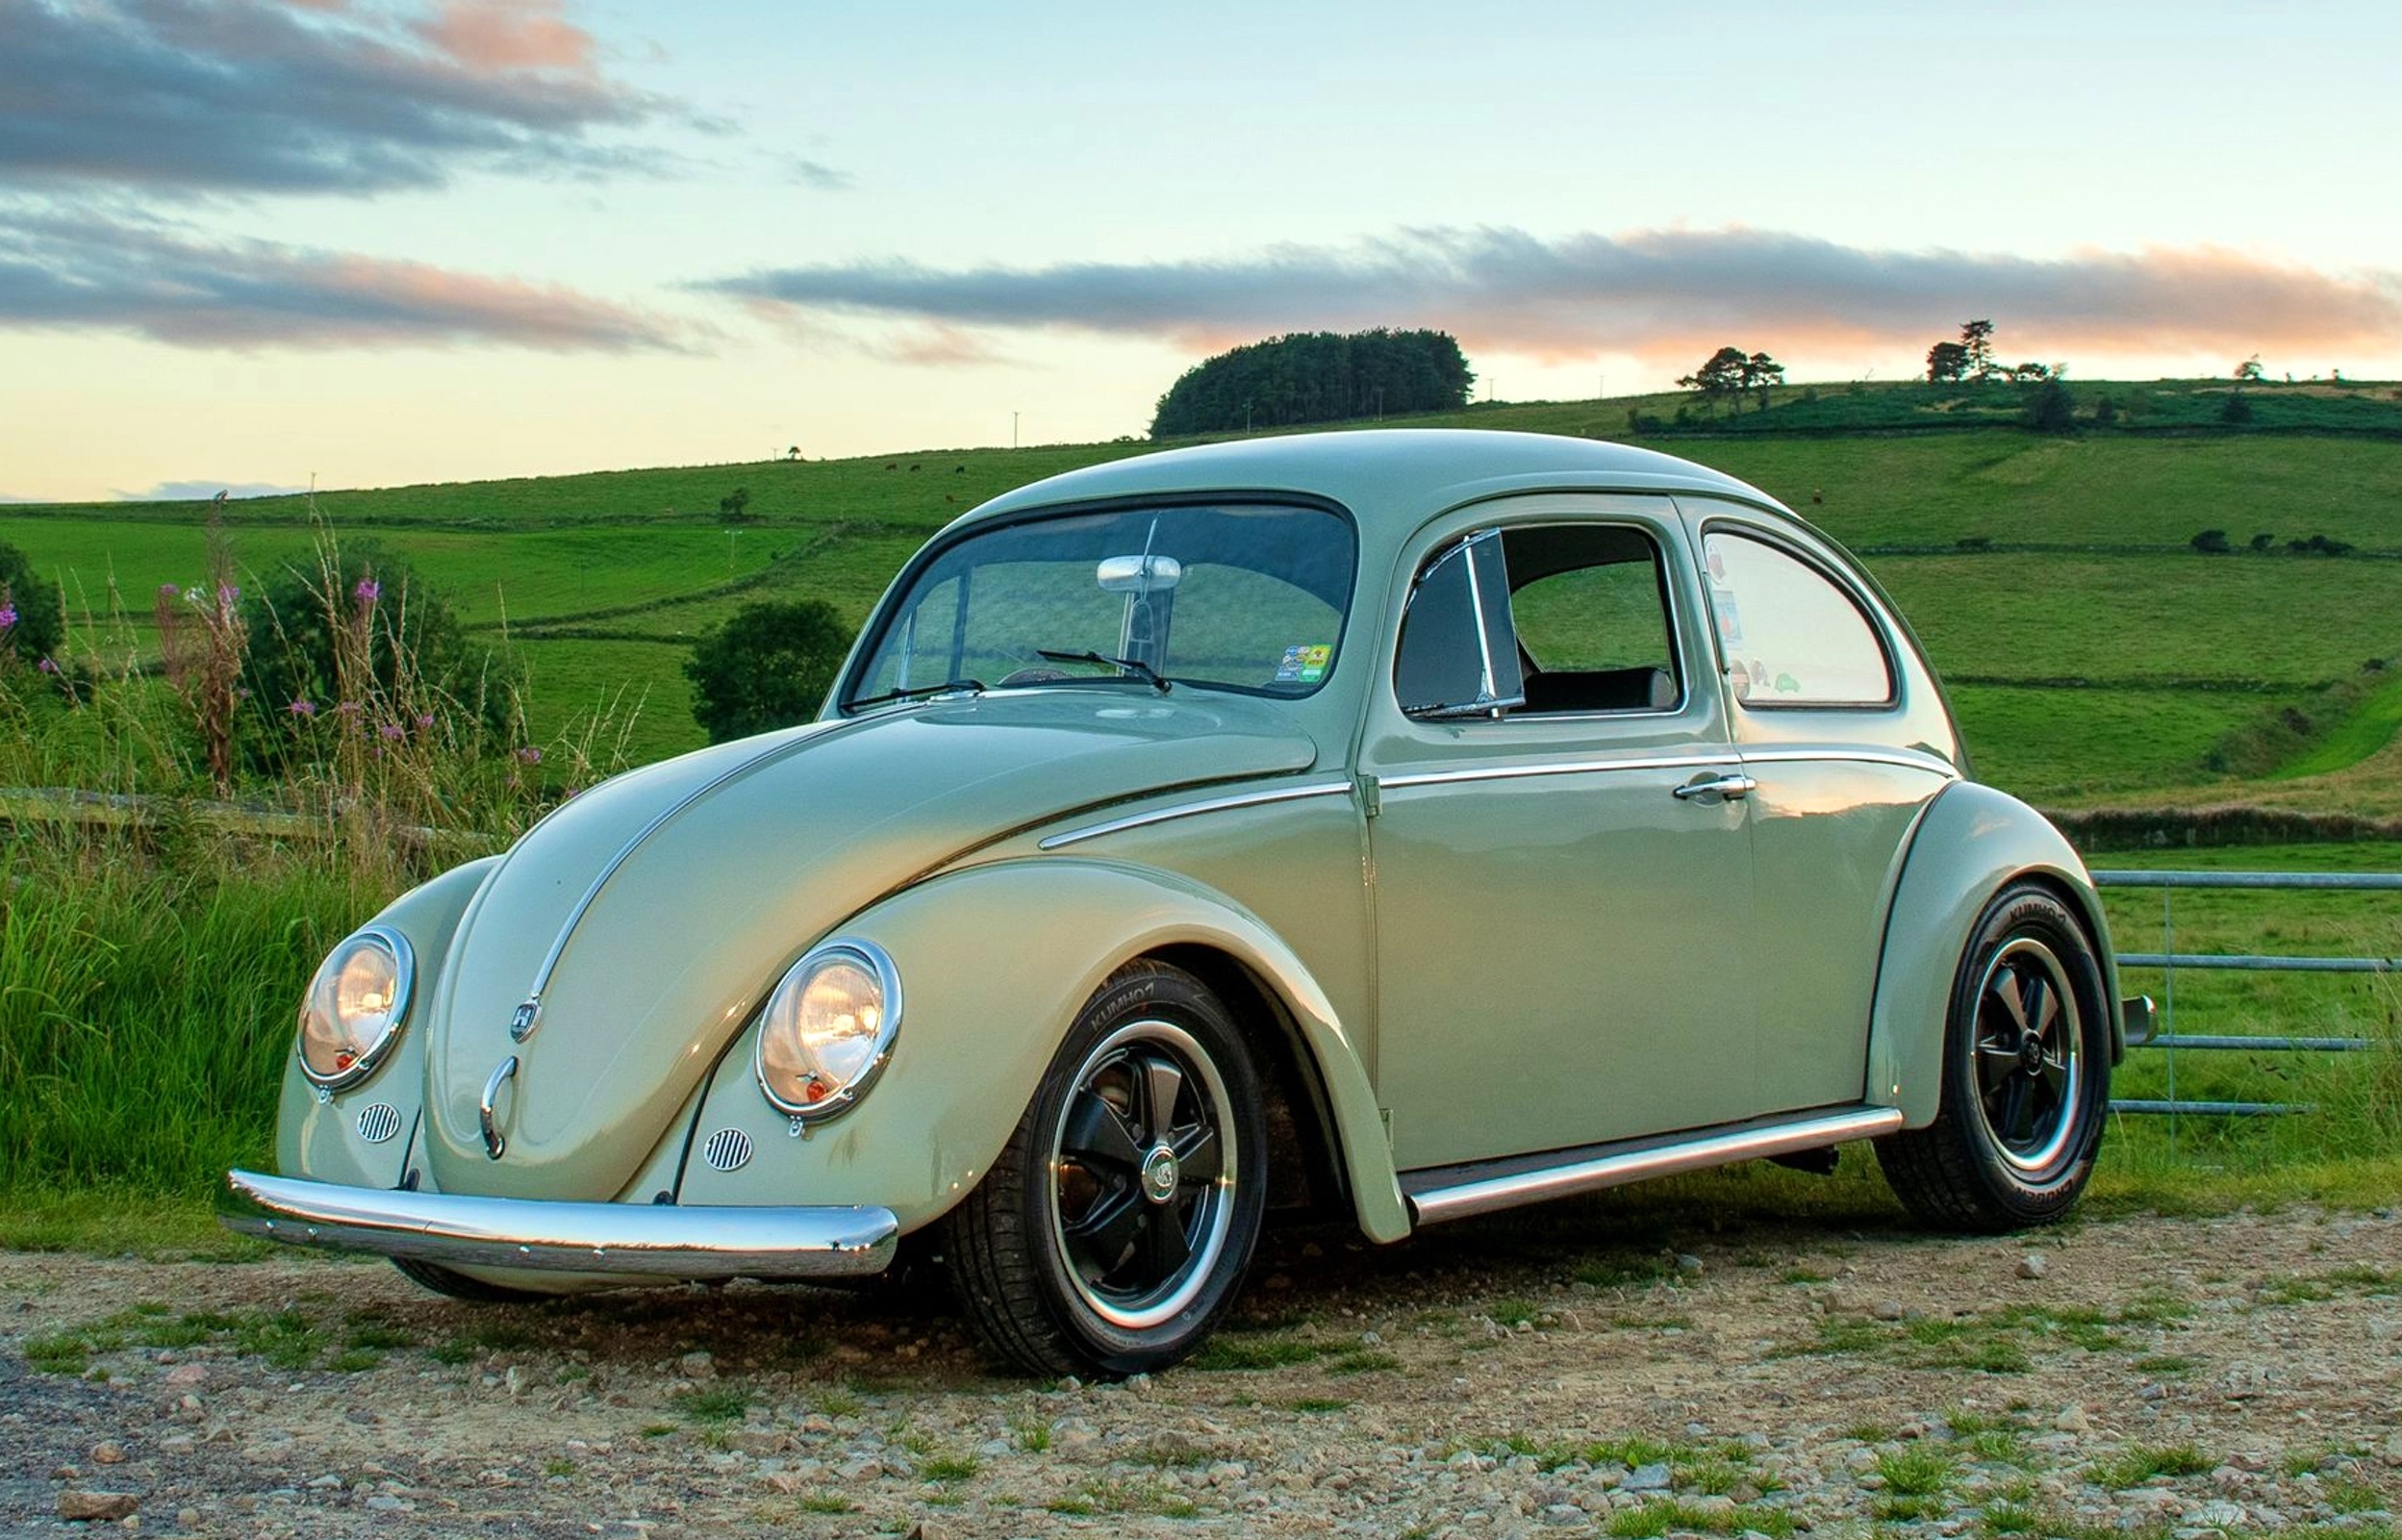 https://www.carandclassic.com/magazine/app/uploads/2022/07/1959-volkswagen-beetle-62c20ac4905aa.jpg